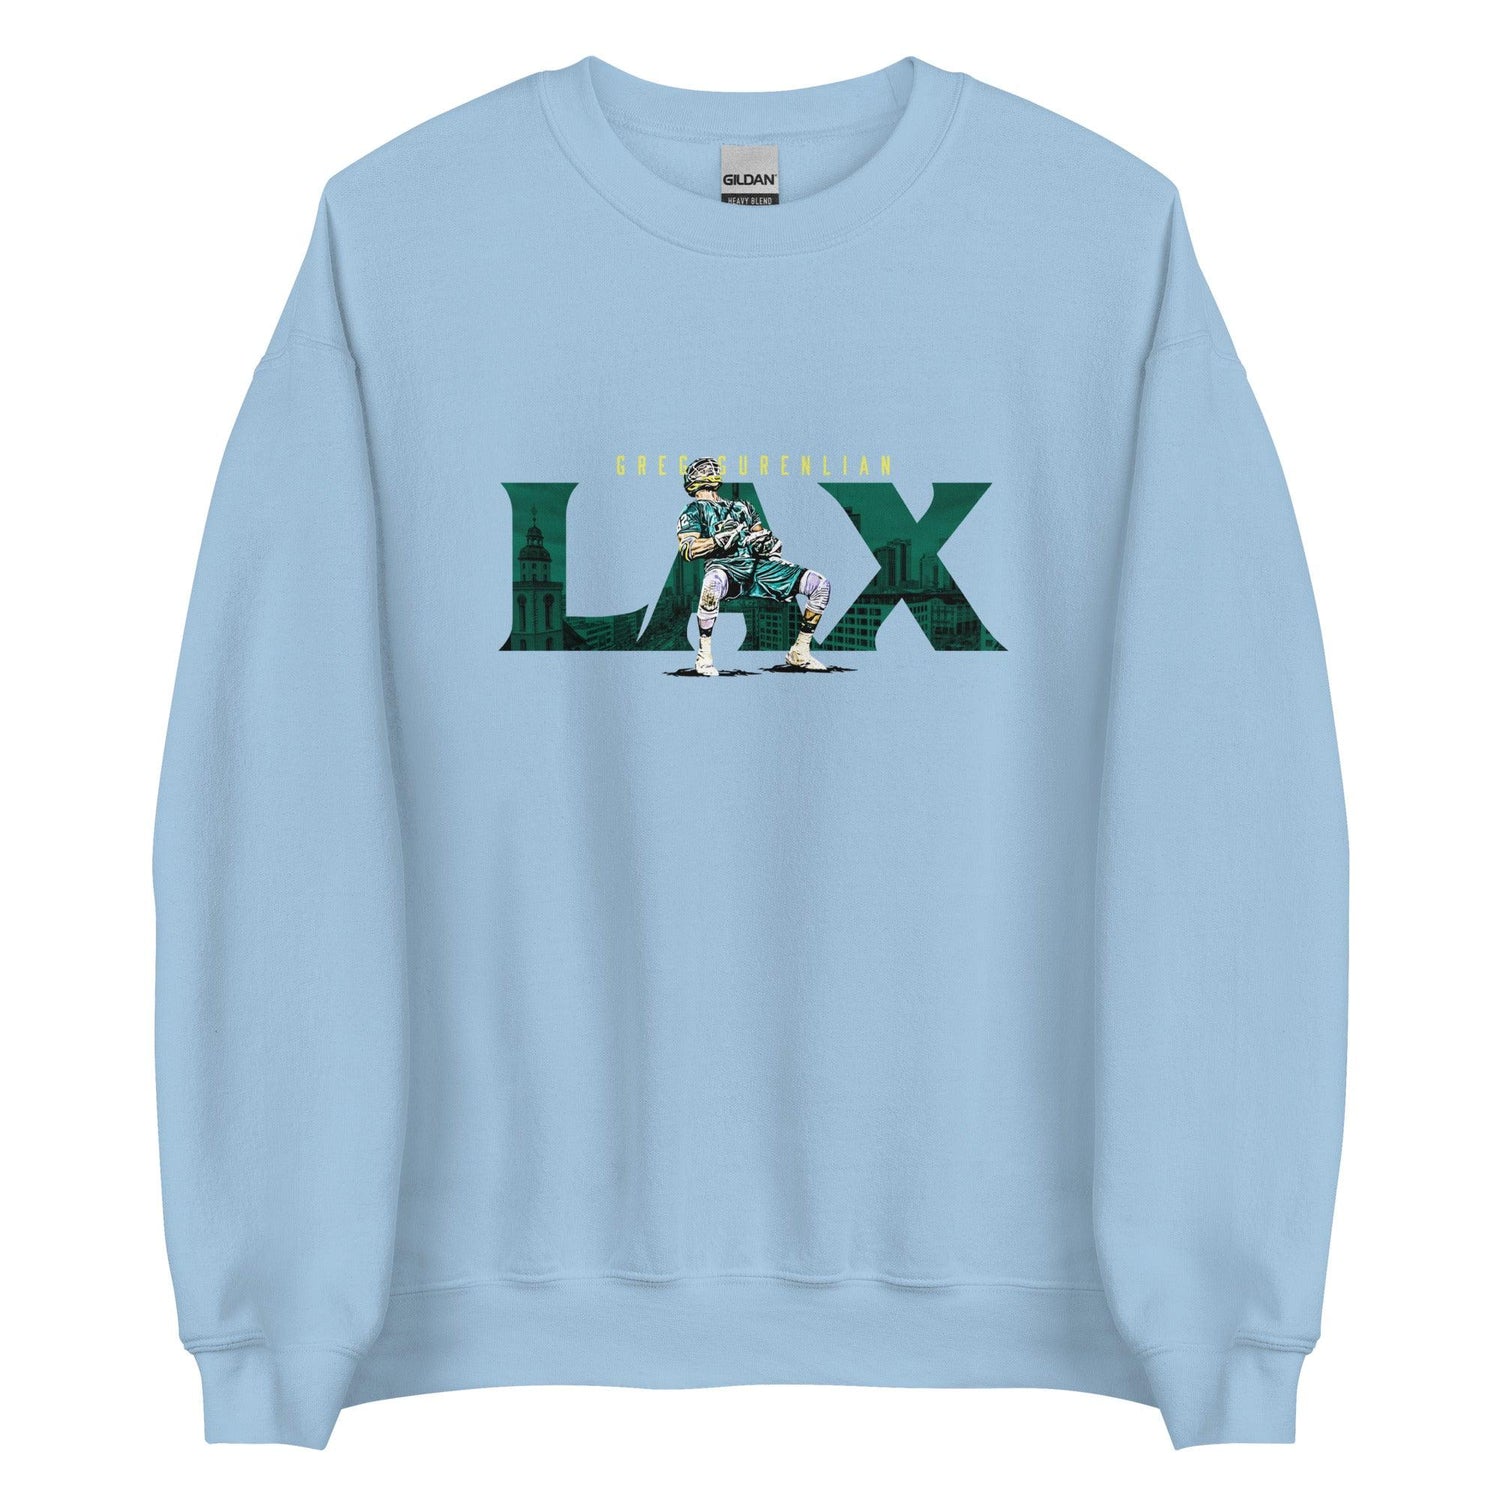 Greg Gurenlian "LAX" Sweatshirt - Fan Arch